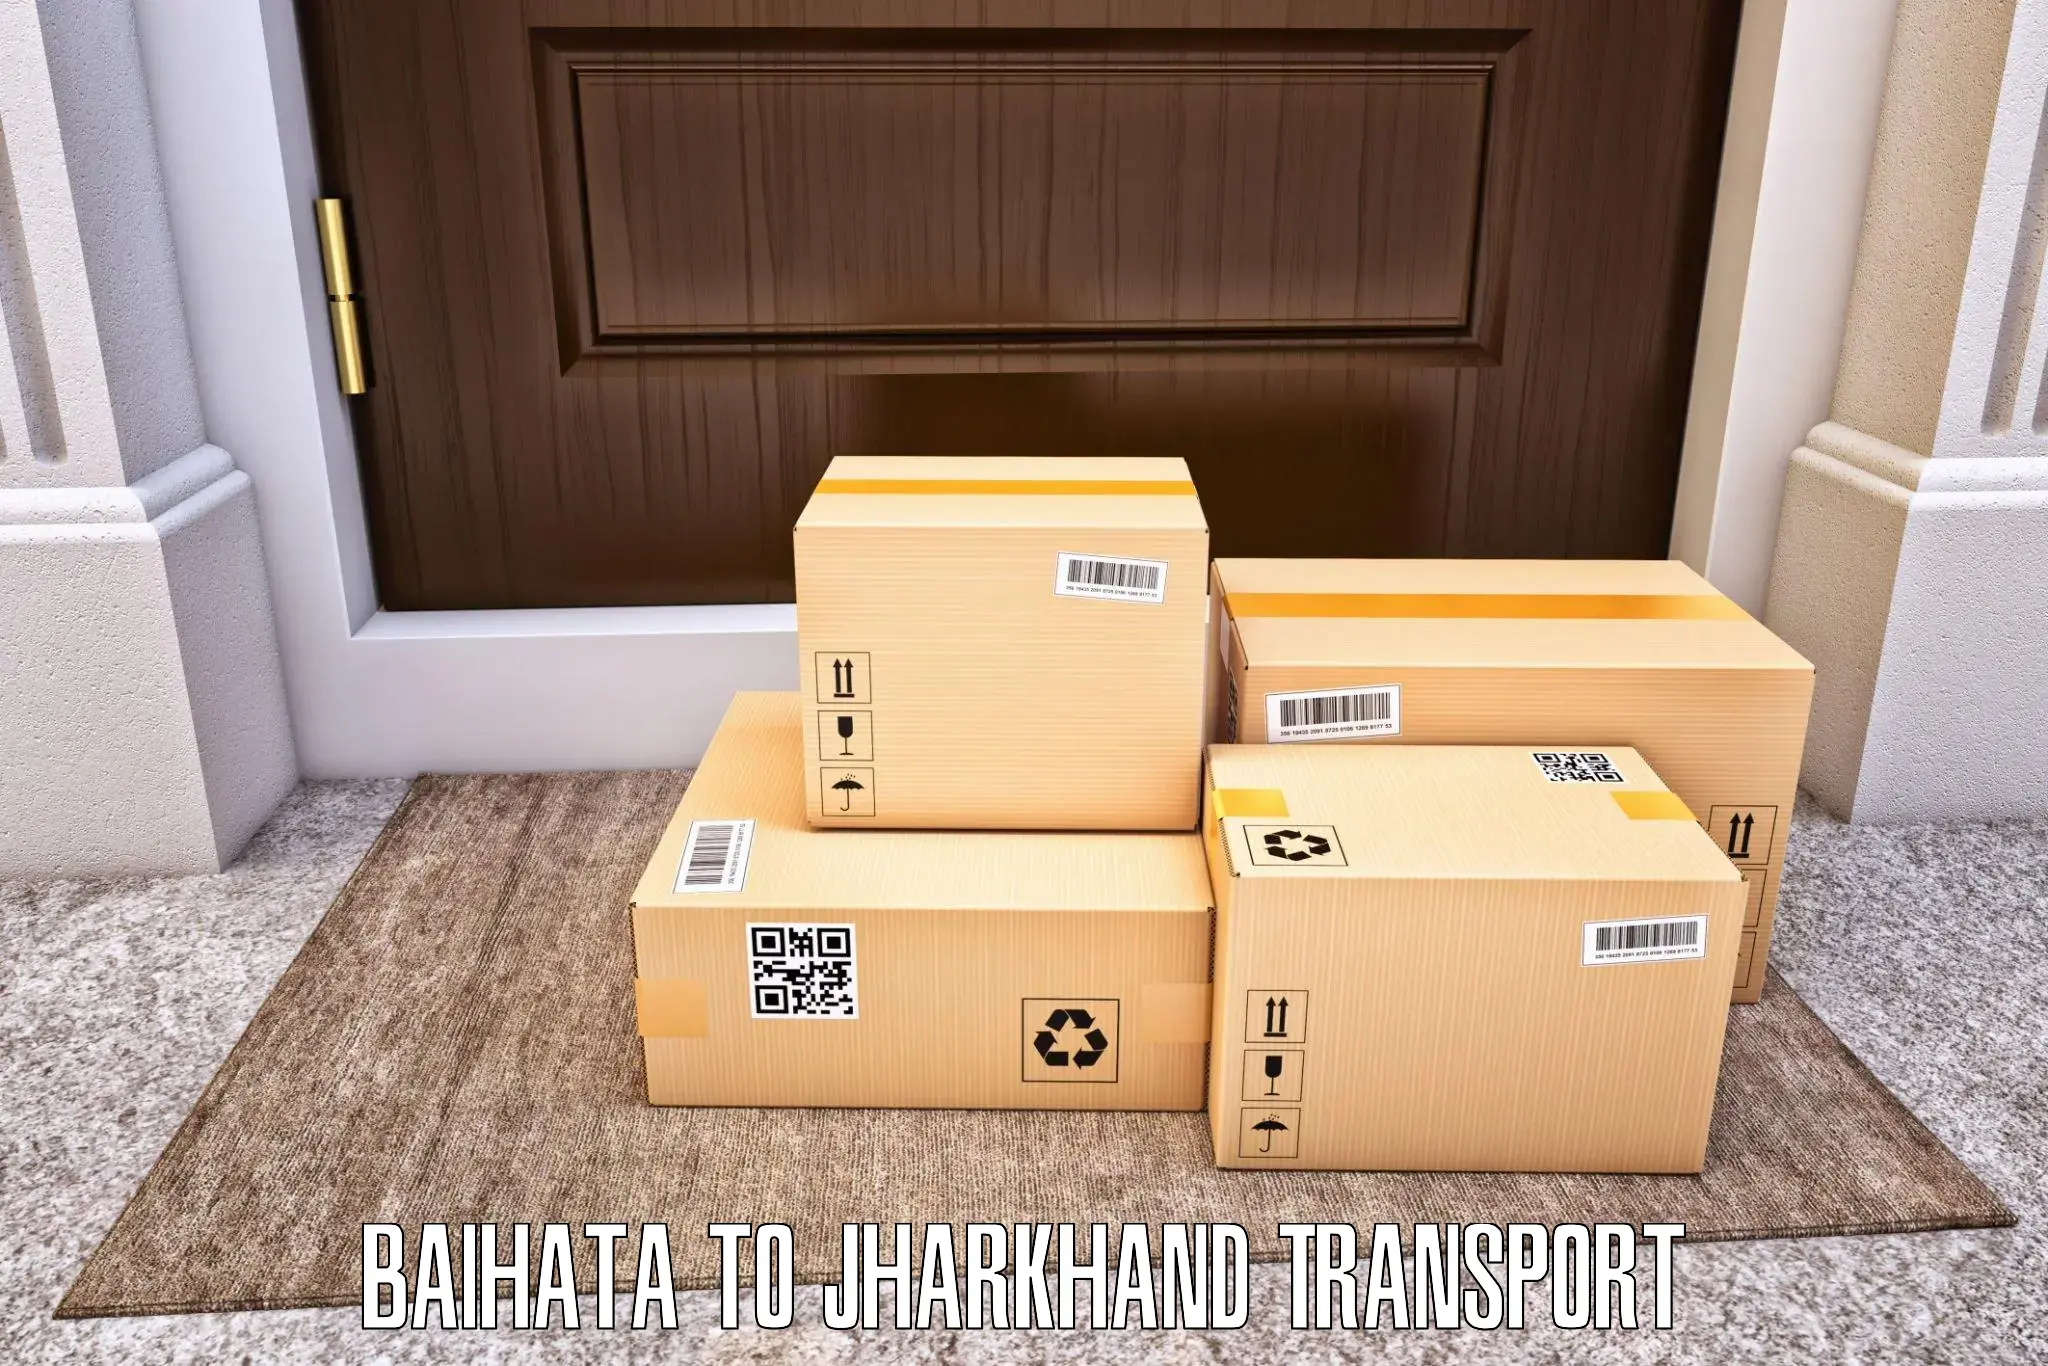 Transport in sharing Baihata to Chakuliya